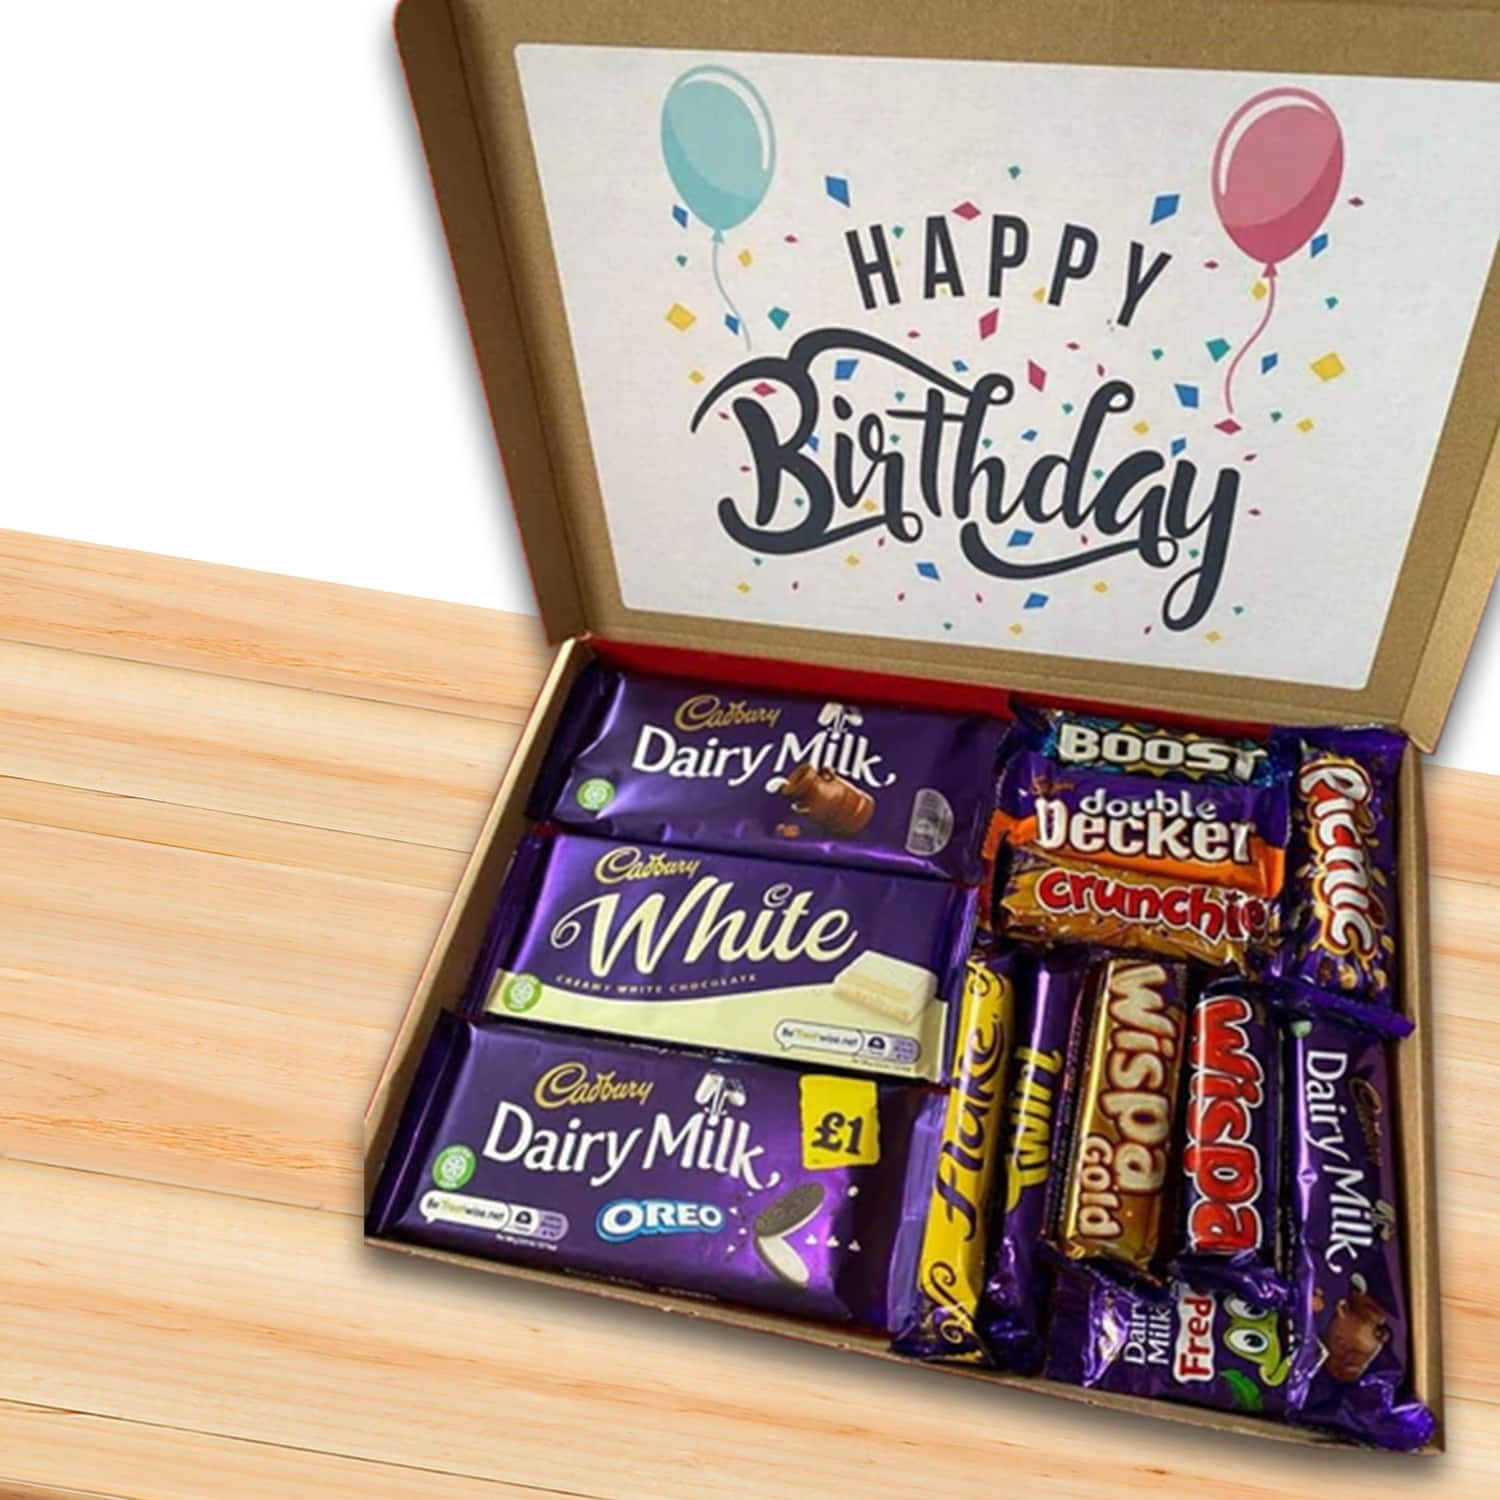 4 Chocolate gift box